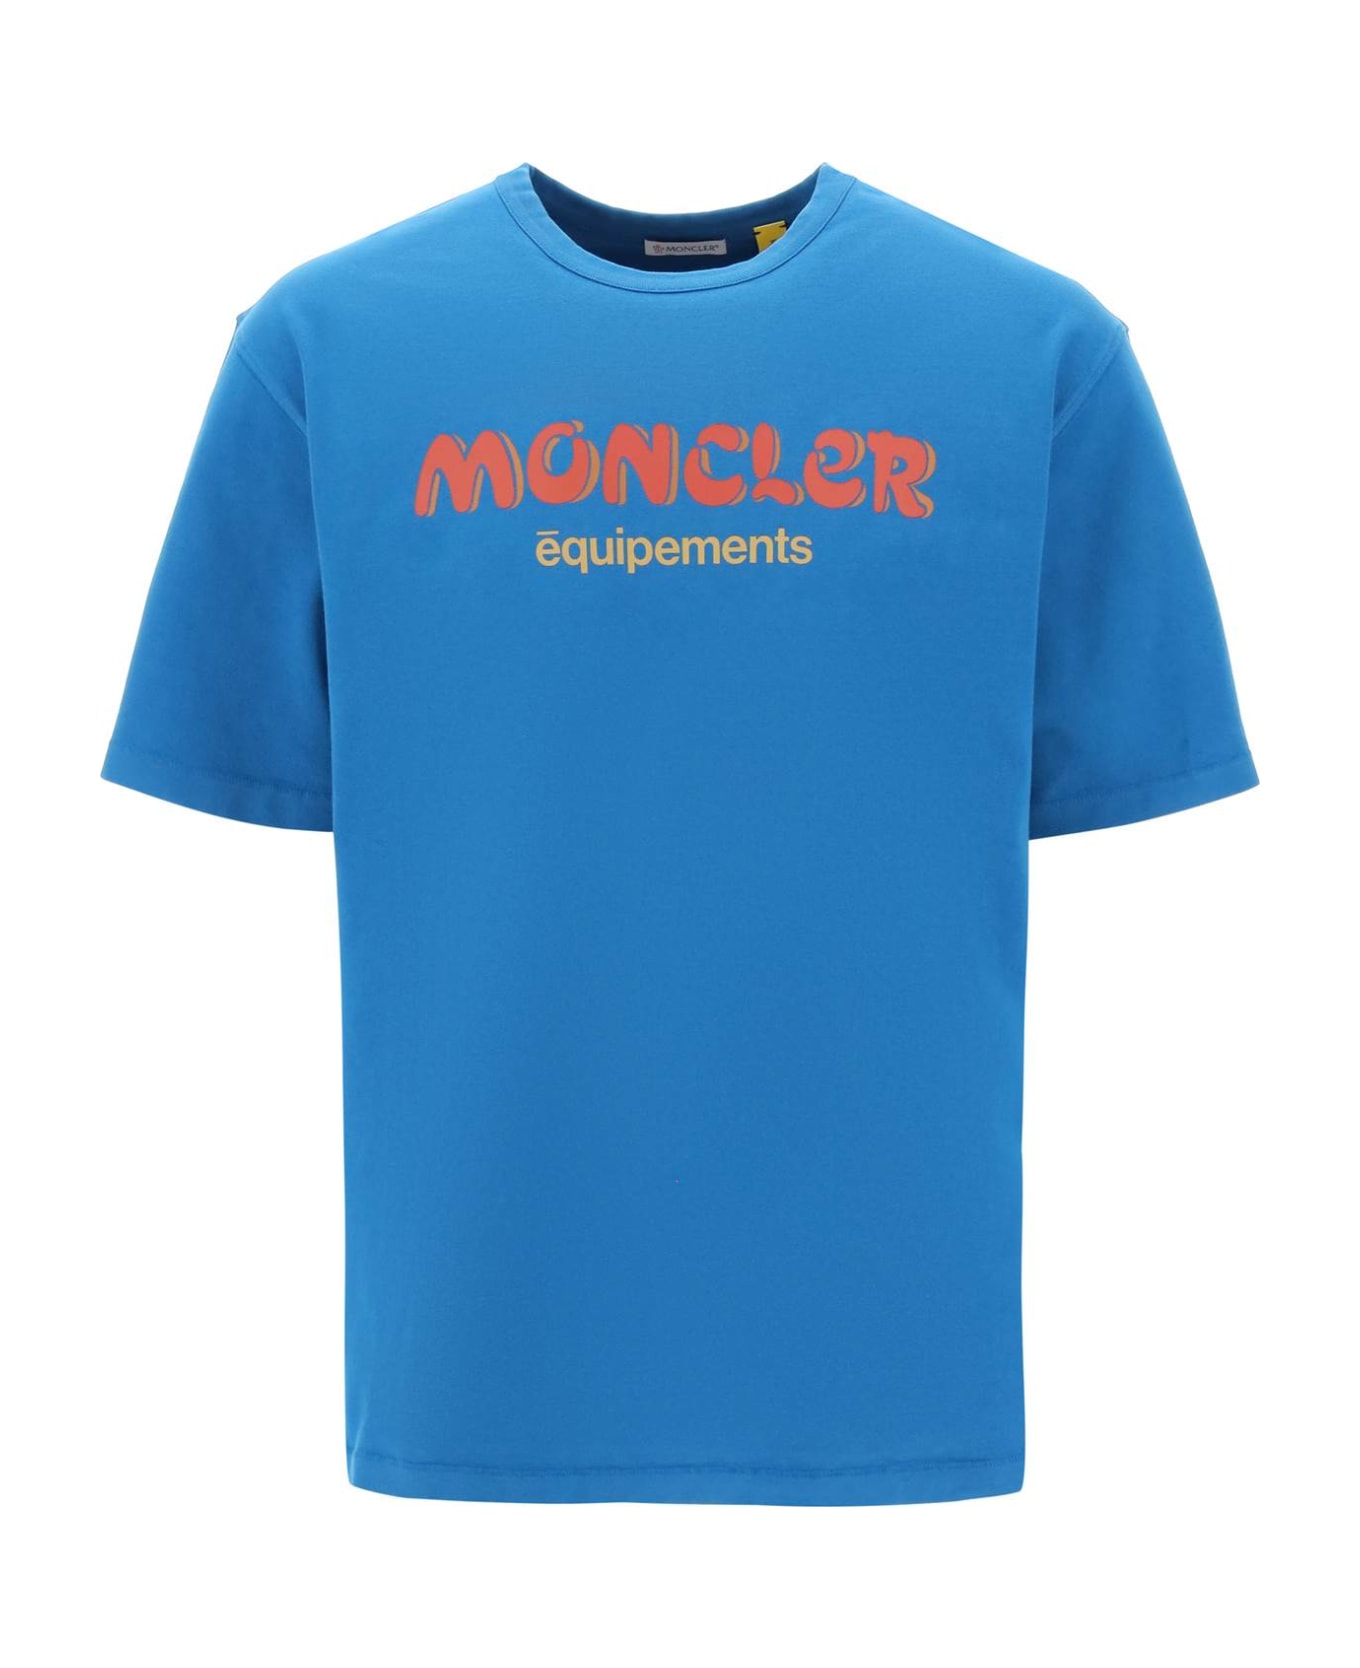 Moncler Genius Cotton T-shirt With Logo - Blue Tシャツ